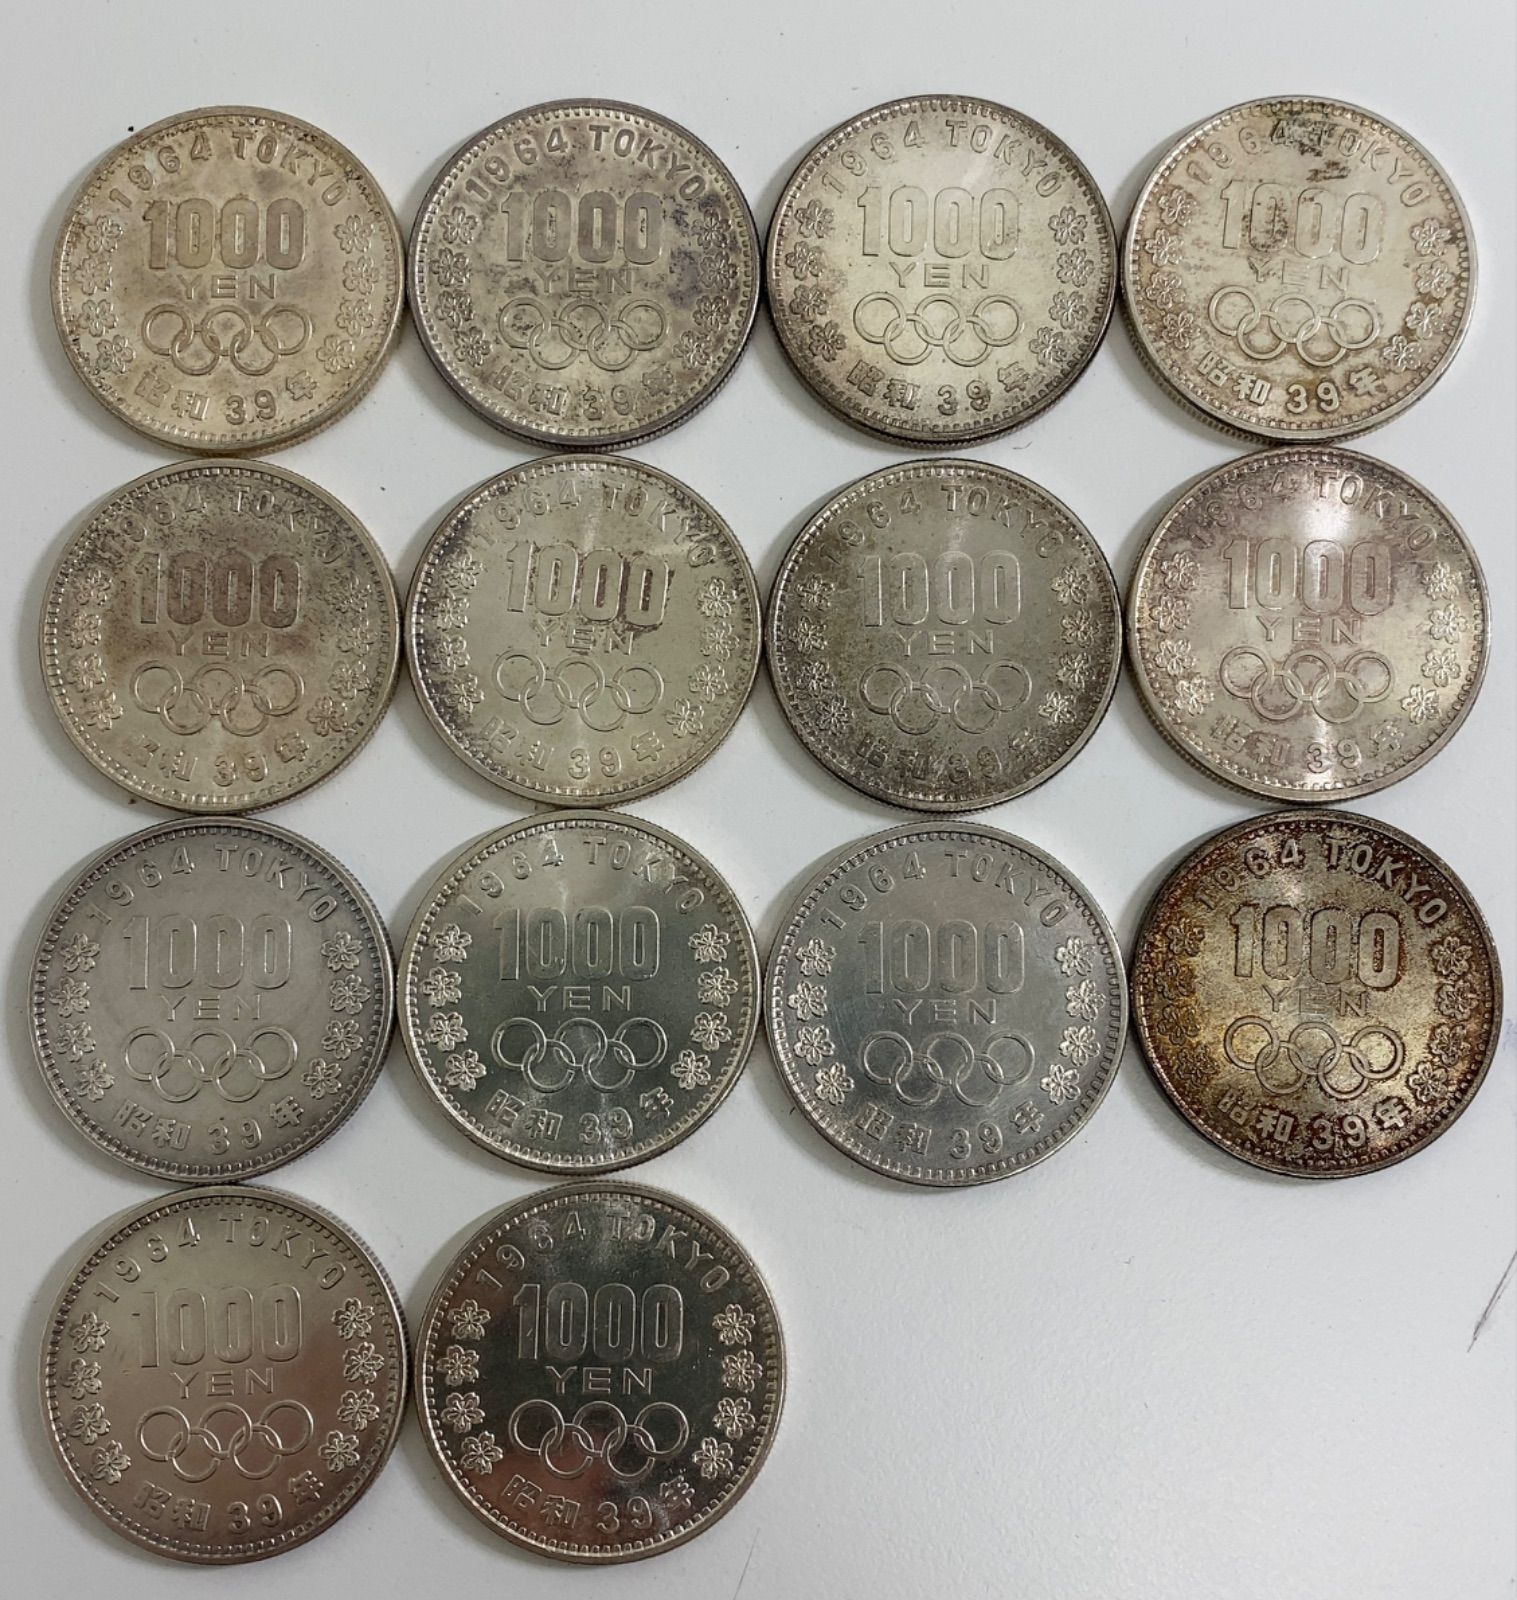 1964年東京オリンピック 1000円銀貨 14枚セット